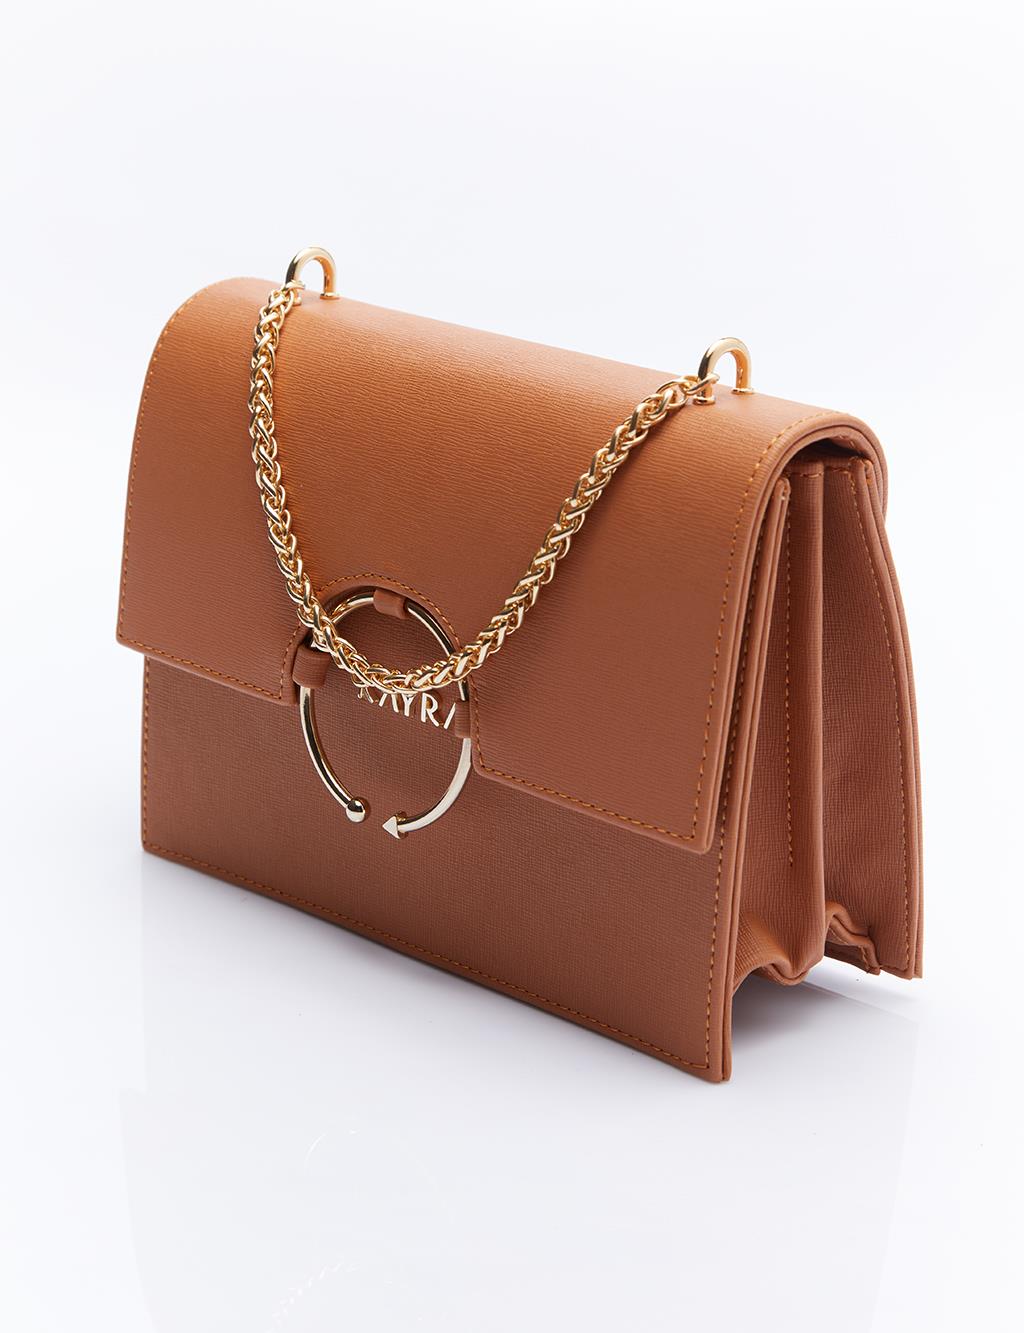 Дизайнерская сумка с ручкой-цепочкой, коричневая Kayra manina taba cilt topuklu ayakkabı